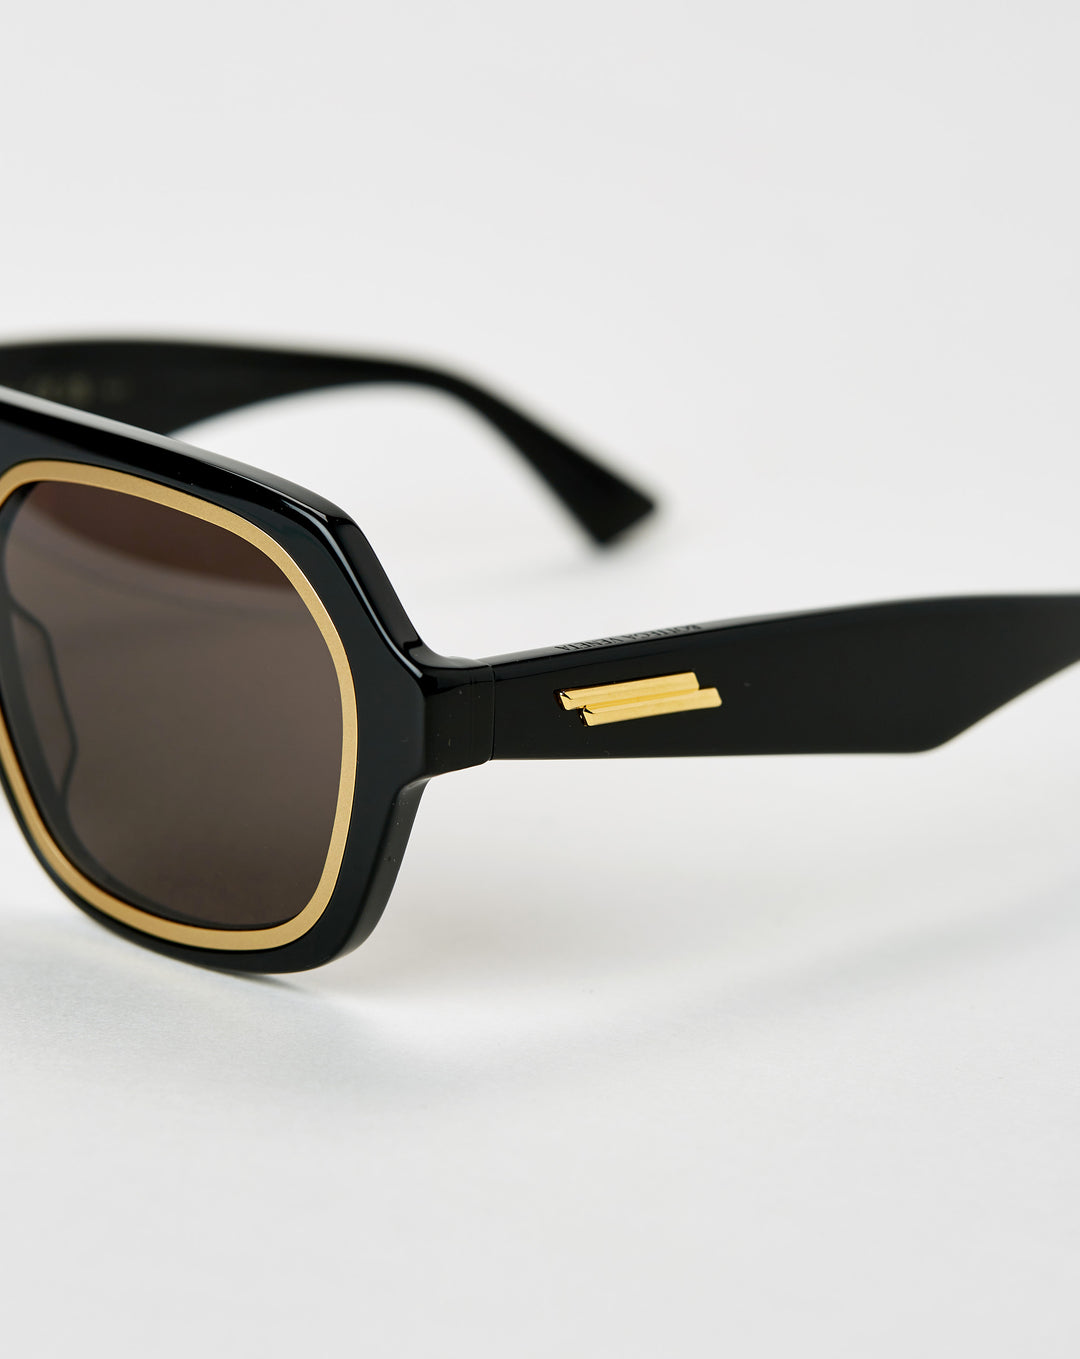 Bottega Veneta Rim Aviator Sunglasses  - XHIBITION